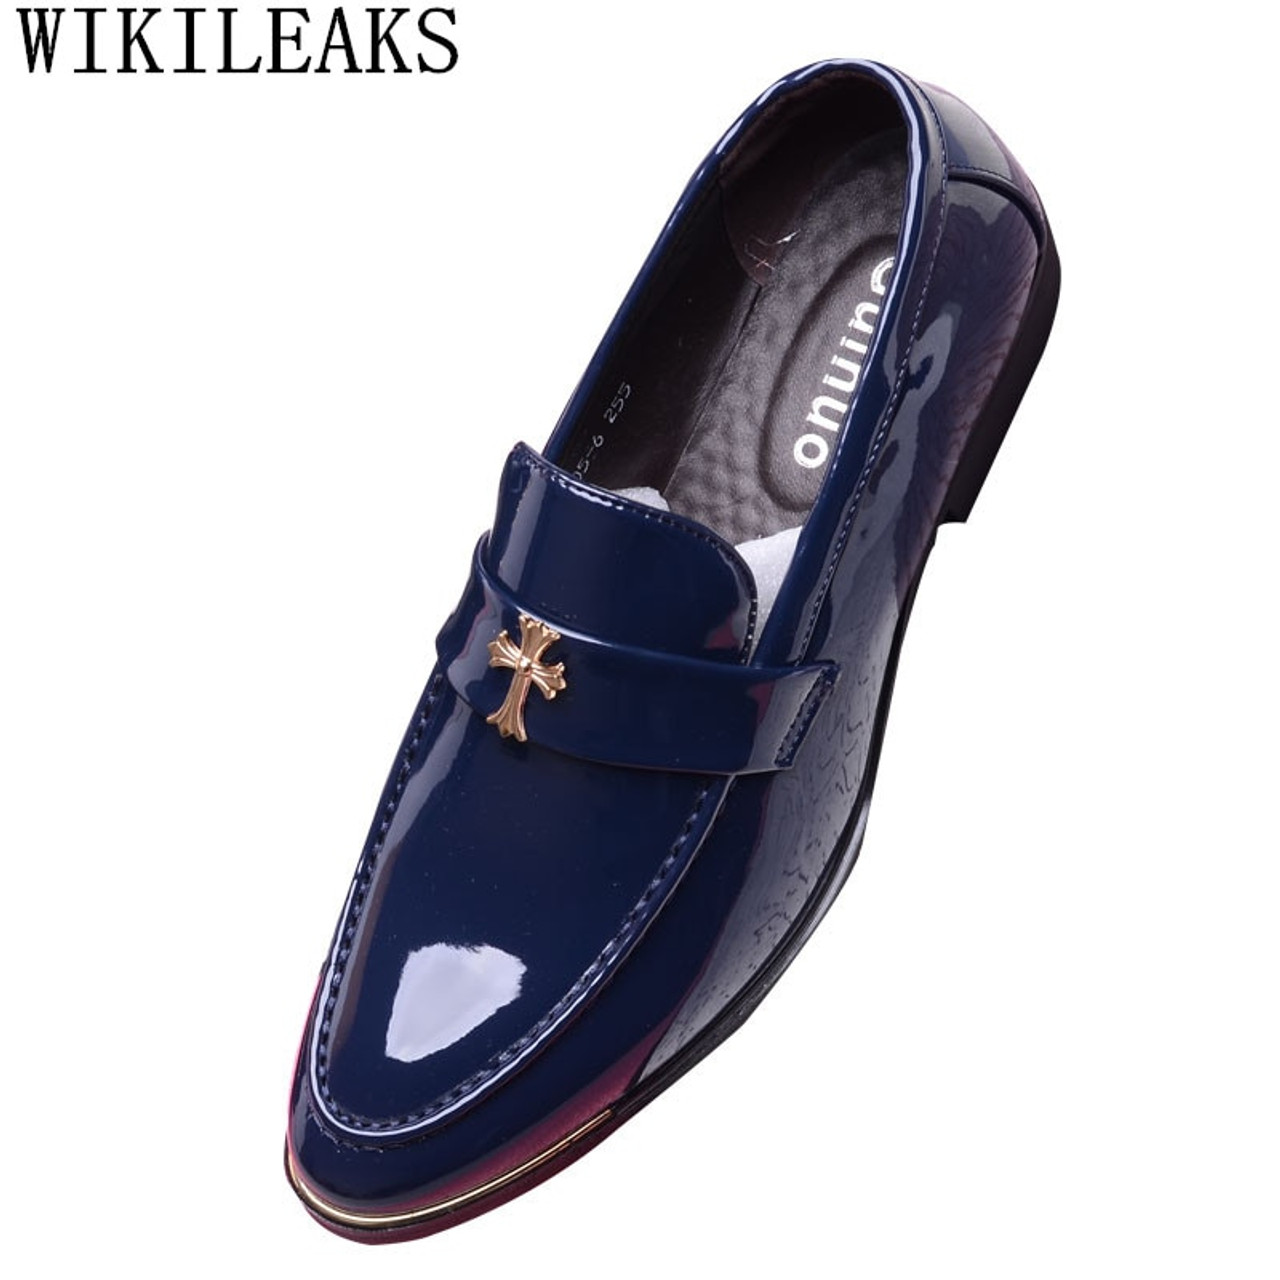 men's loafers formal